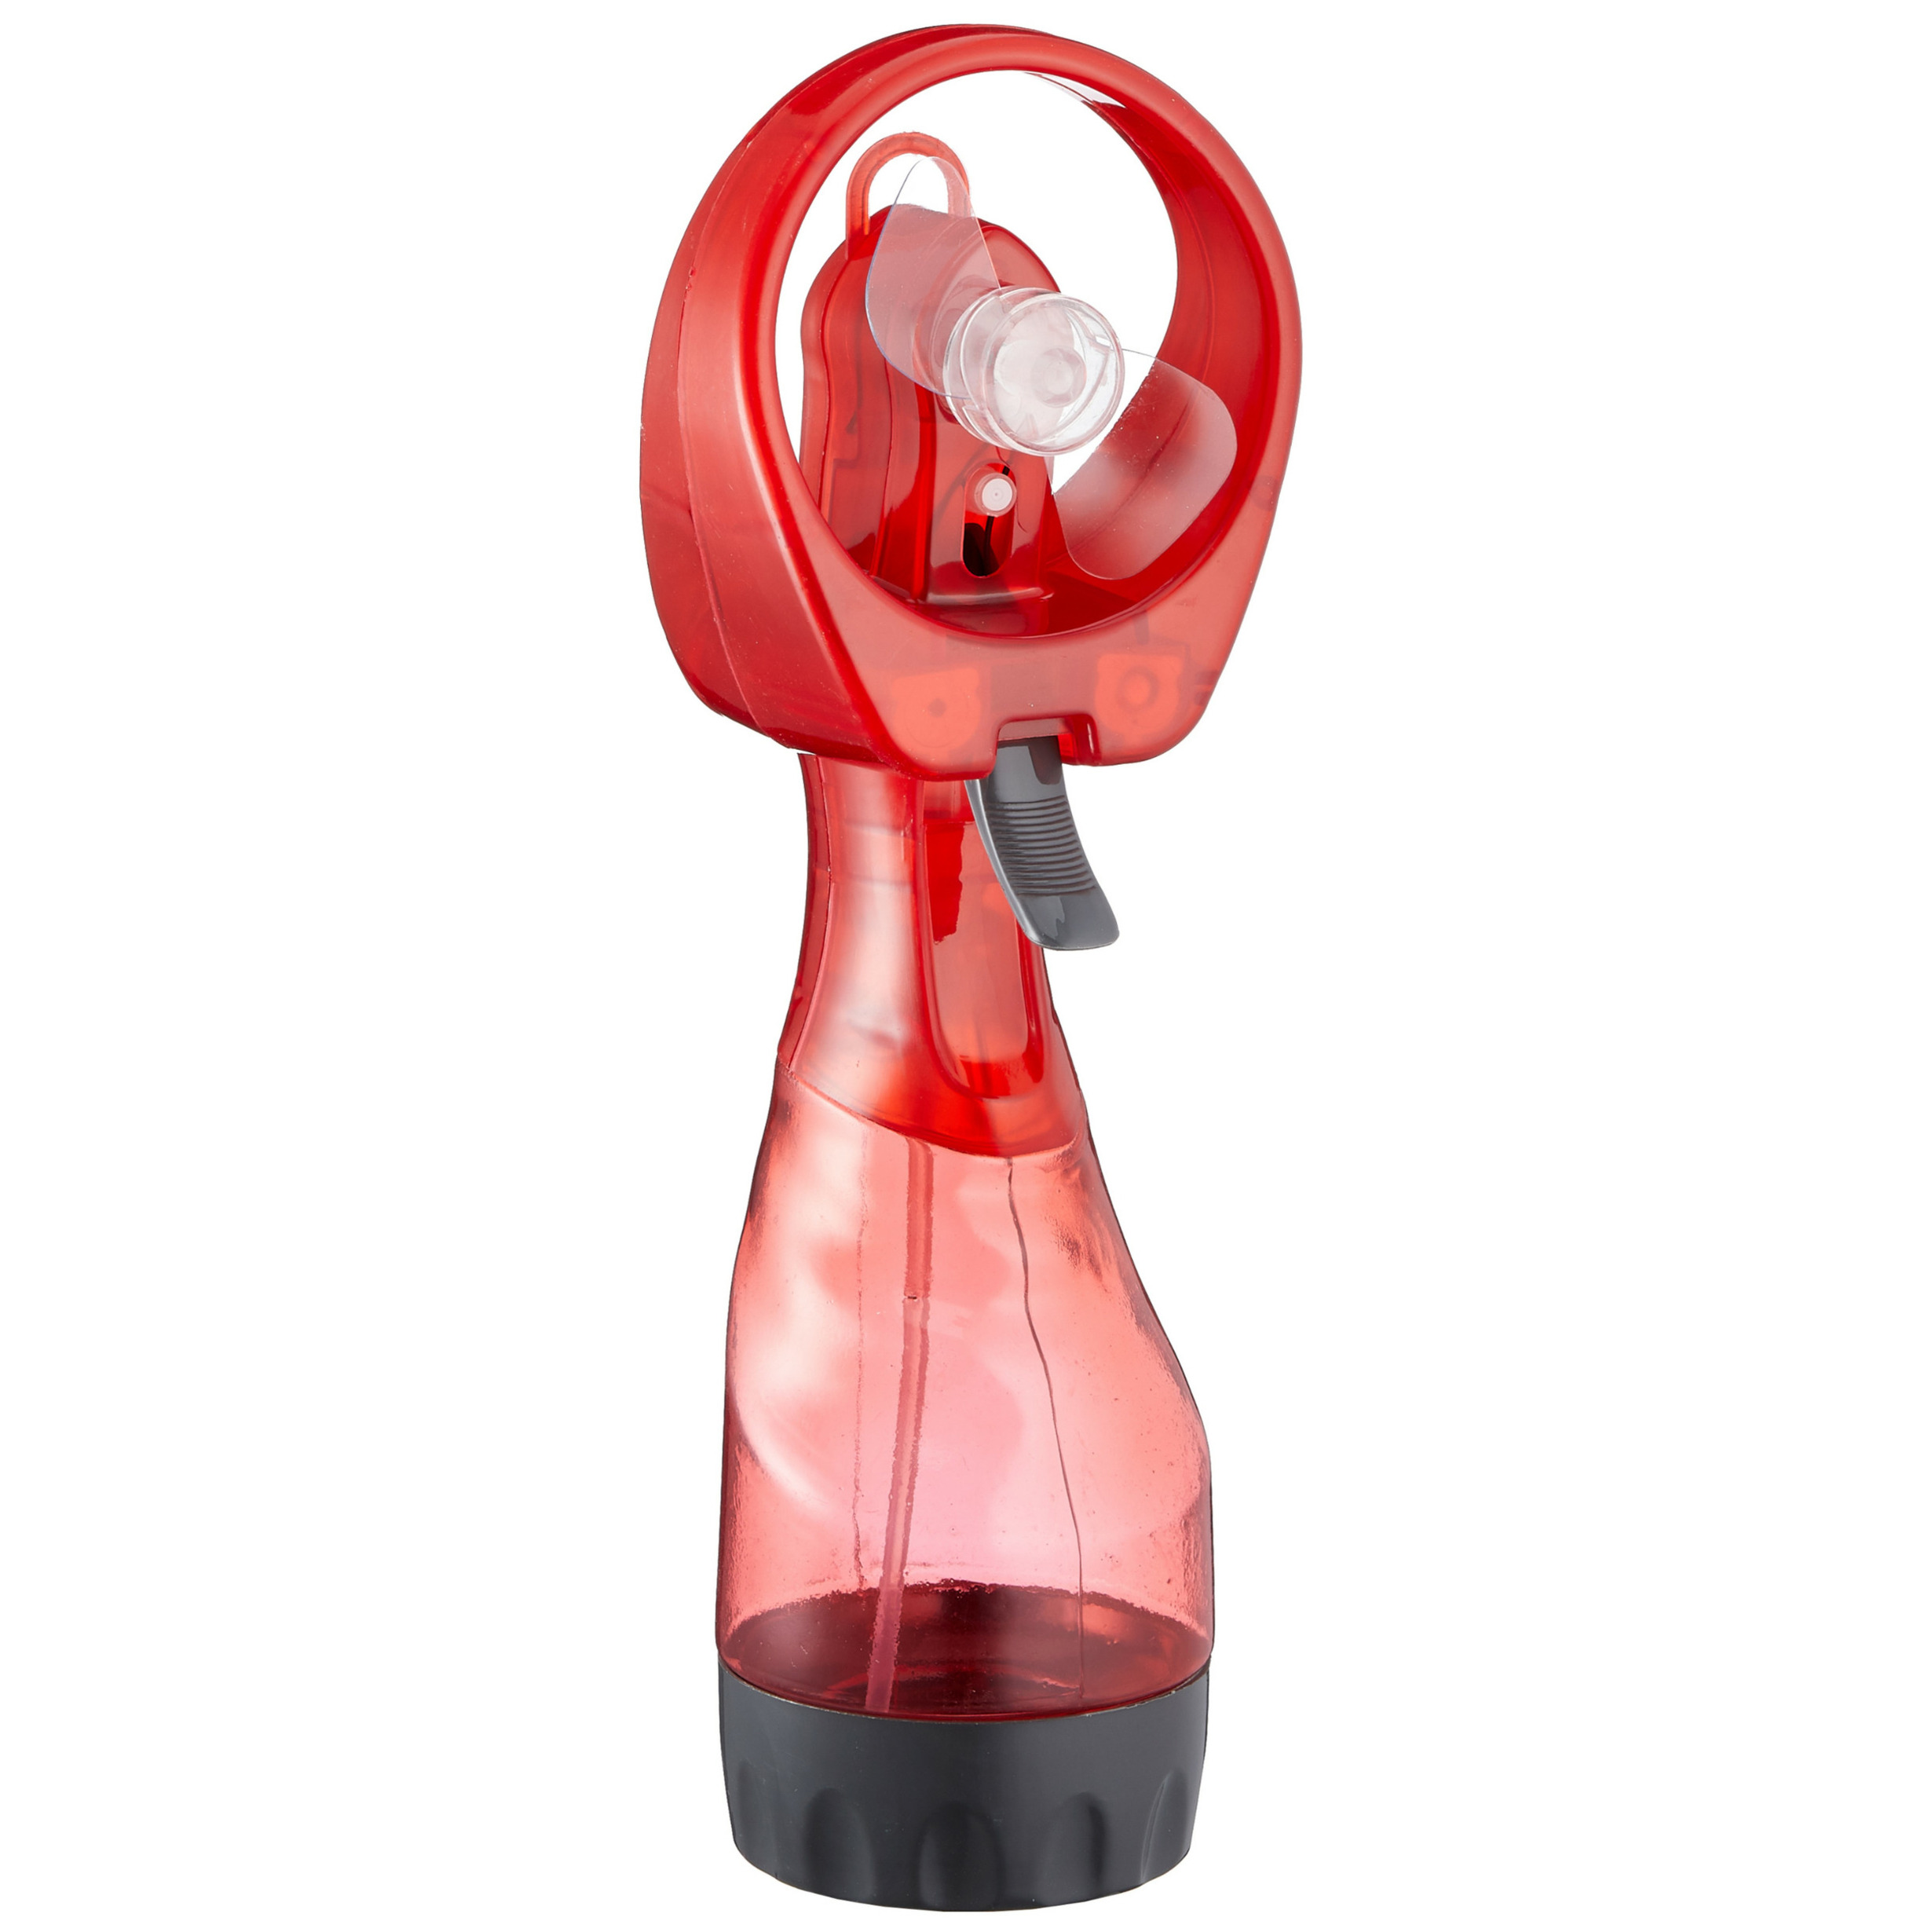 Ventilator-waterverstuiver voor in je hand Verkoeling in zomer 25 cm Rood